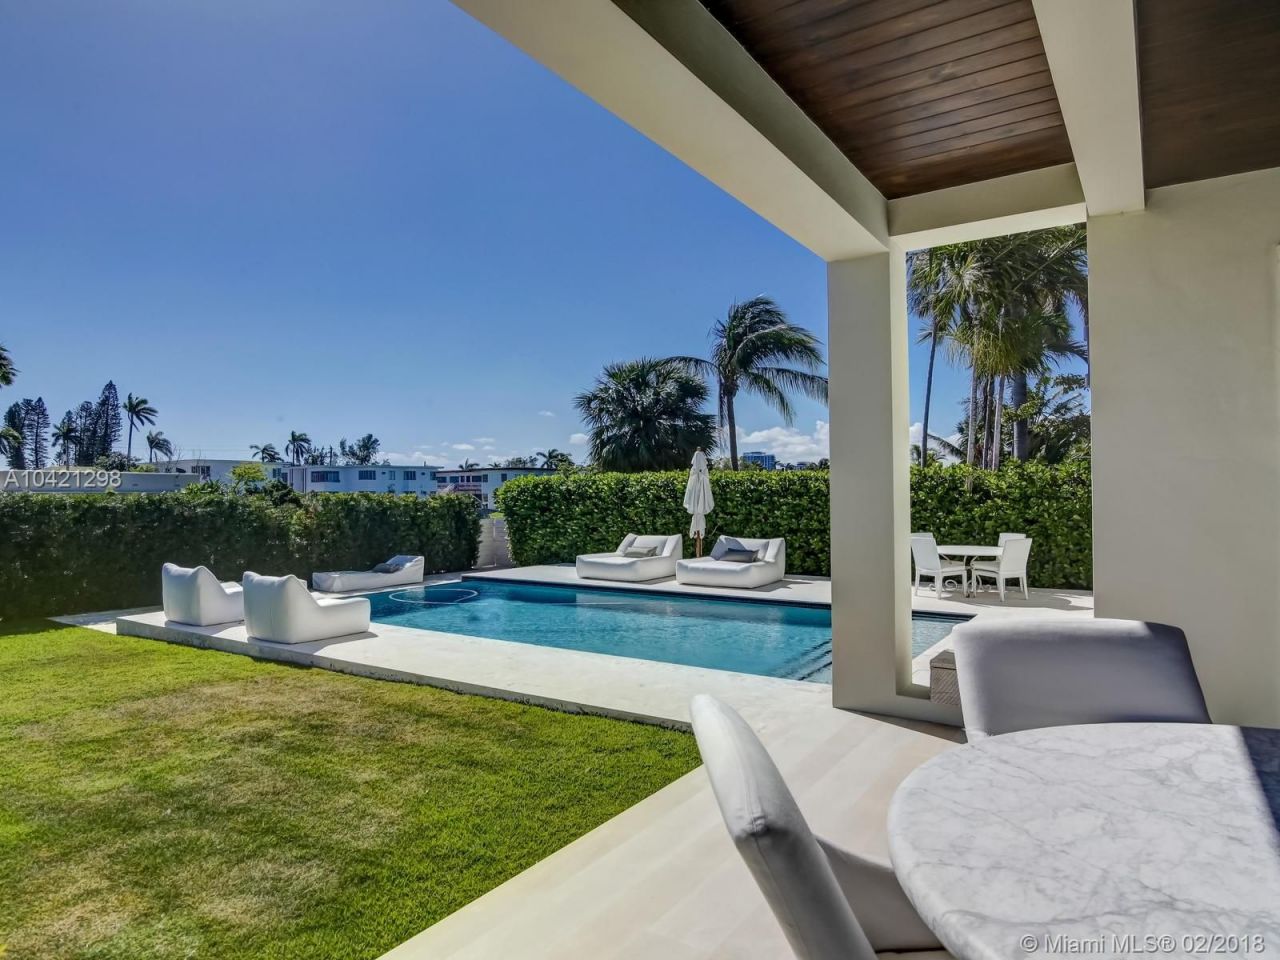 Villa in Miami, USA, 430 m2 - Foto 1